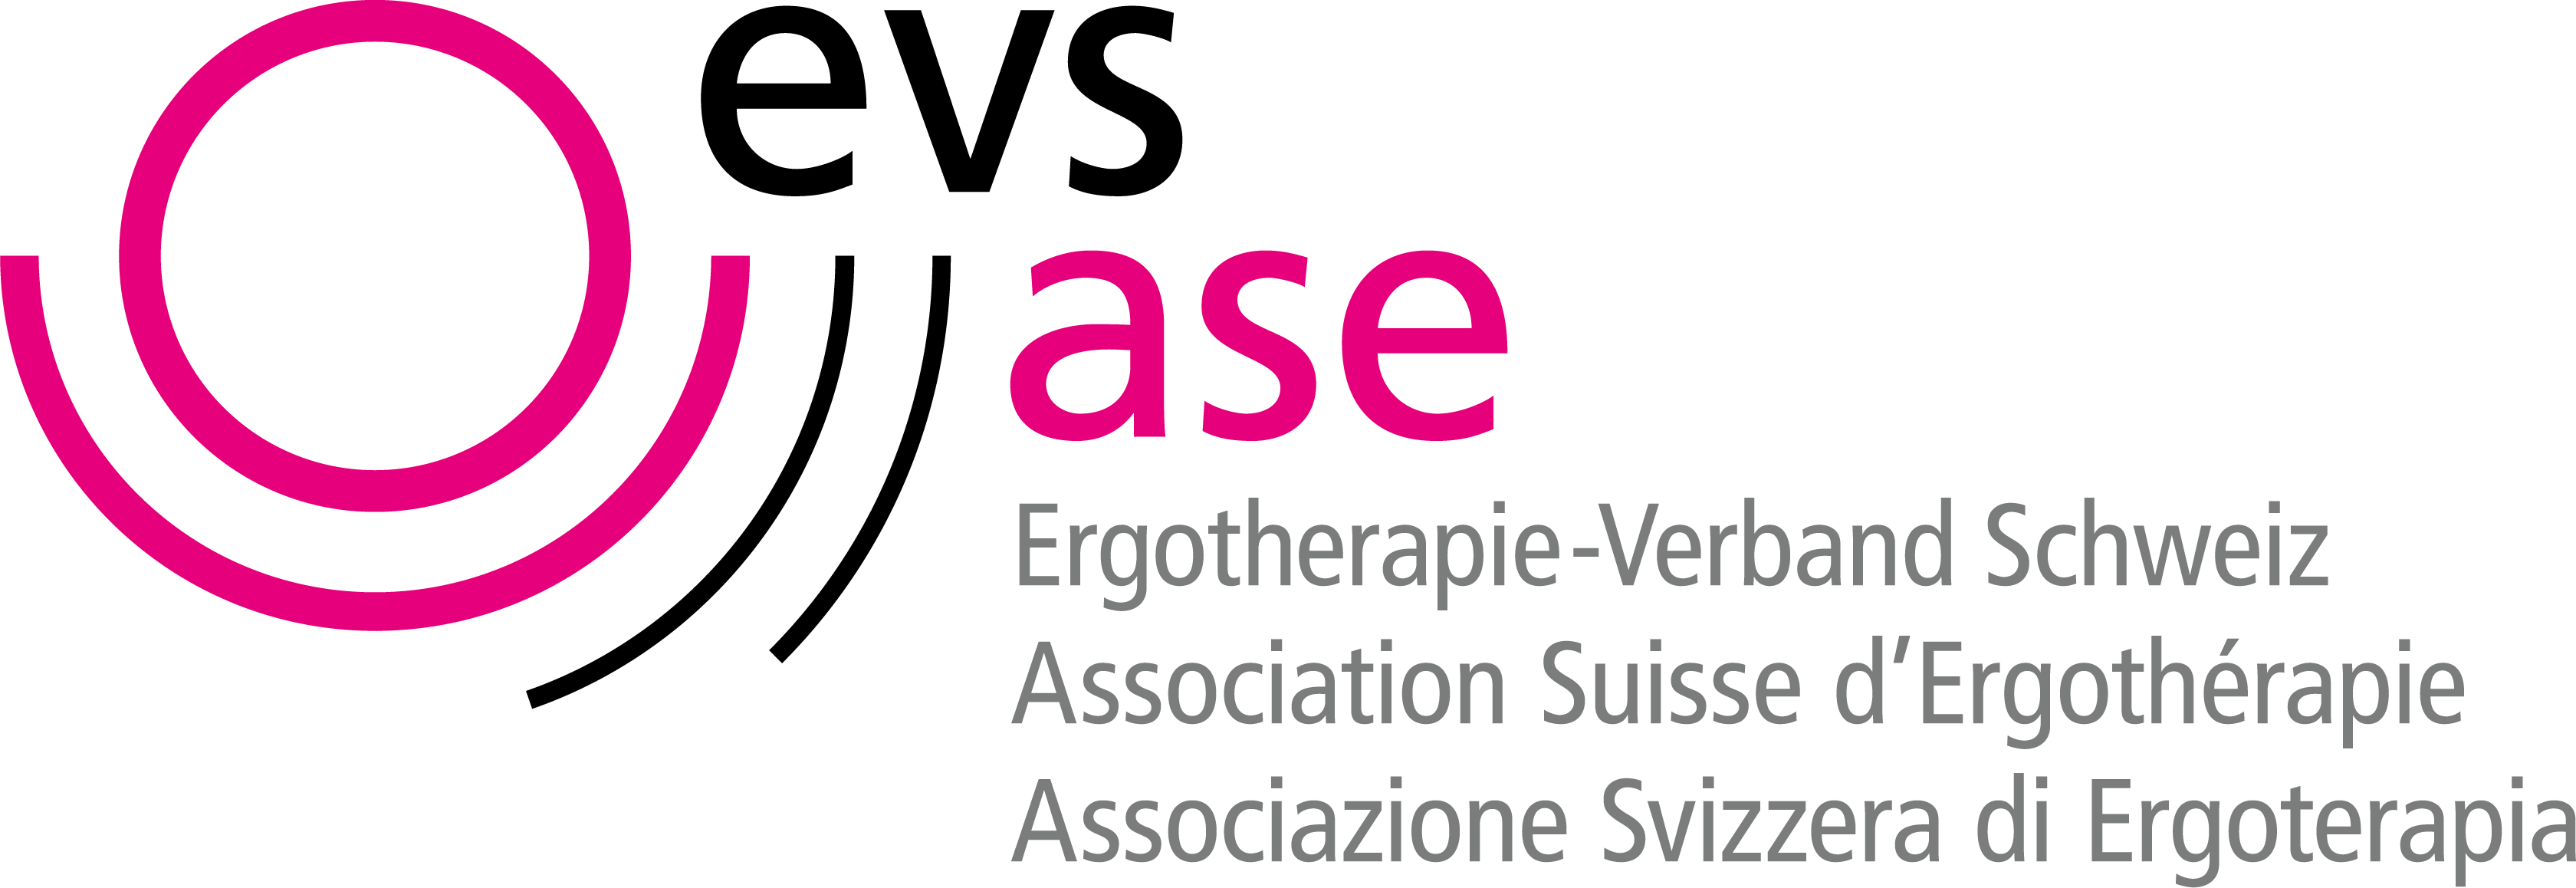 evs-ase_Logo-NEU